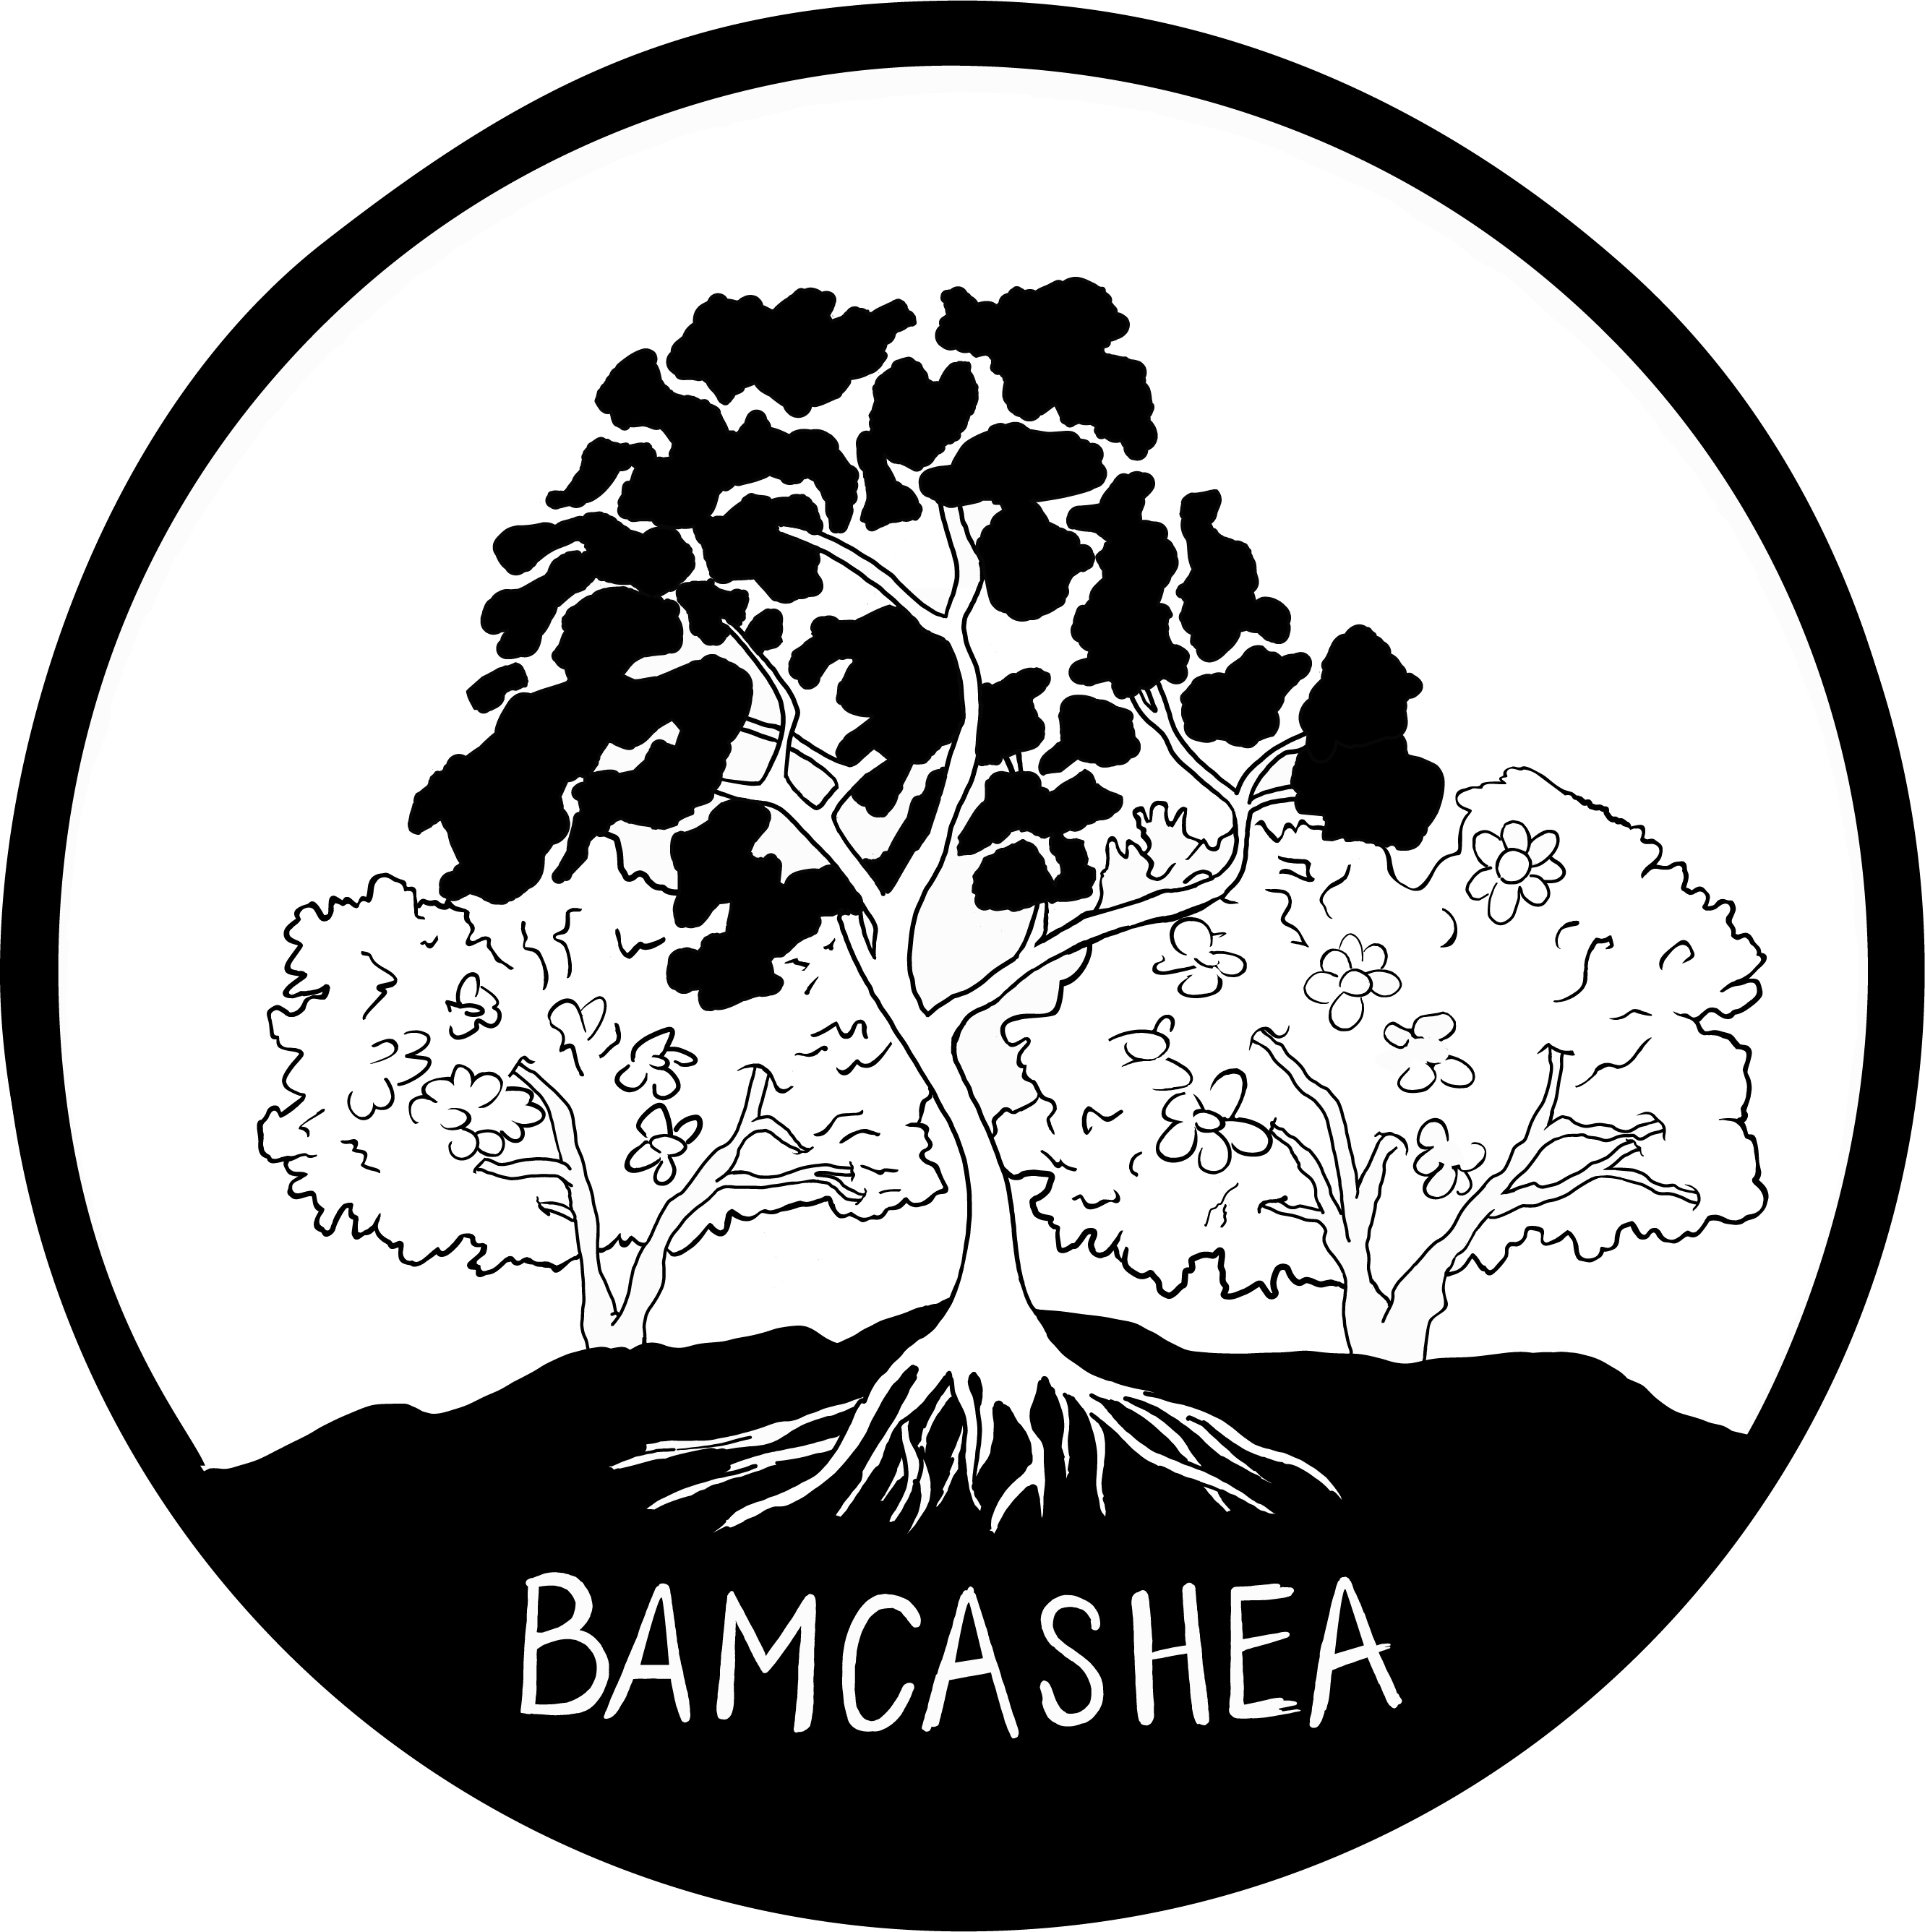 BamCashea logo